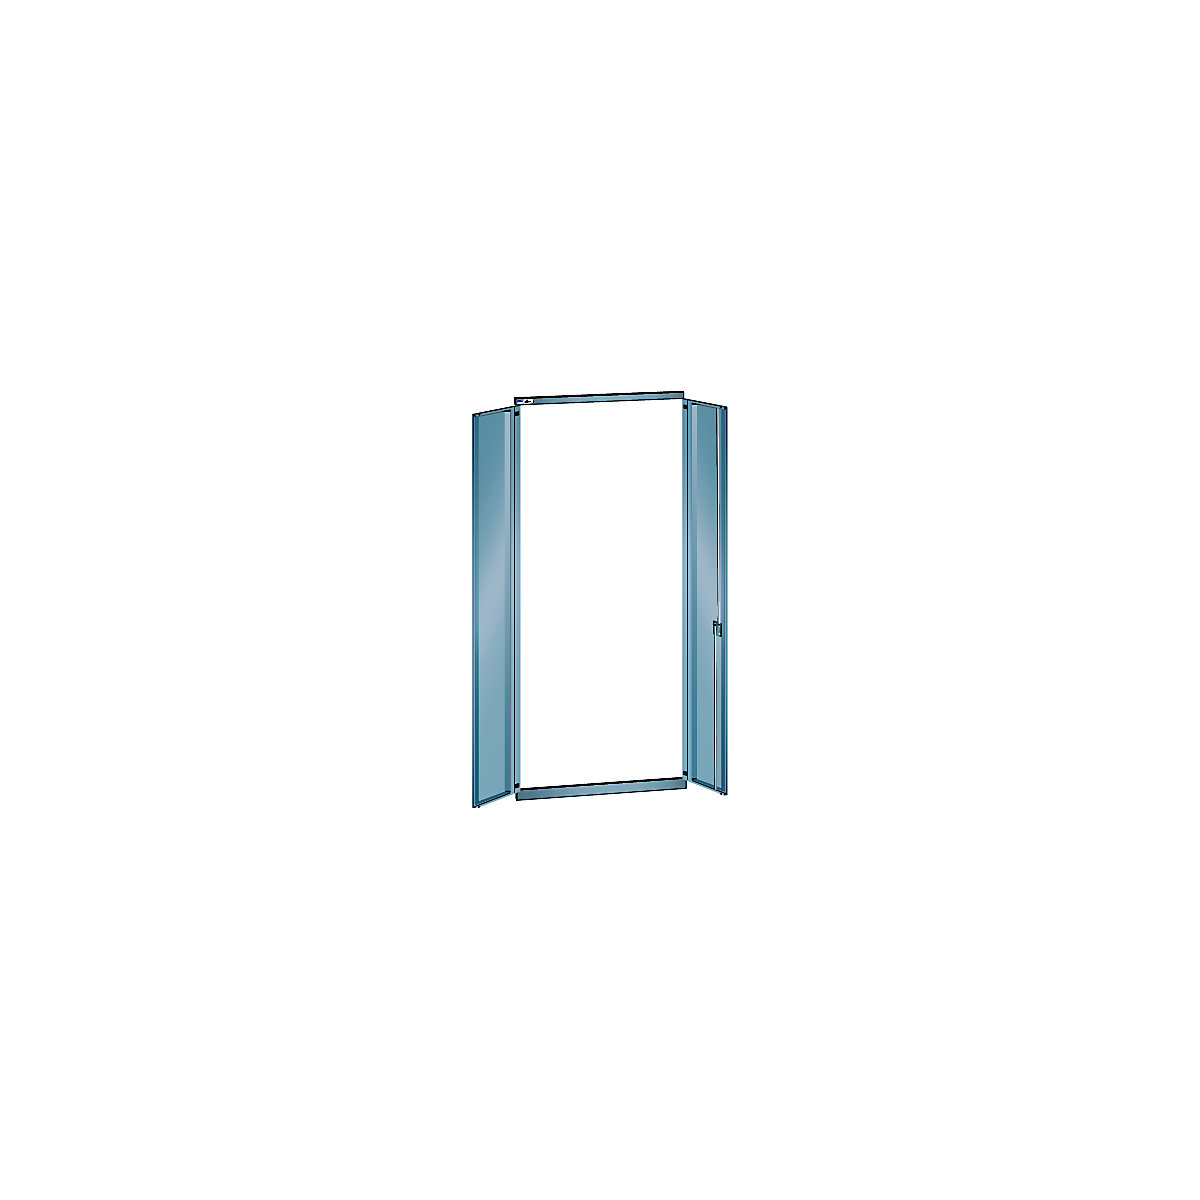 Porta de batente, chapa de aço – LISTA, para largura da prateleira de 1000 mm, altura 2500 mm, estante adicional, cinzento metálico